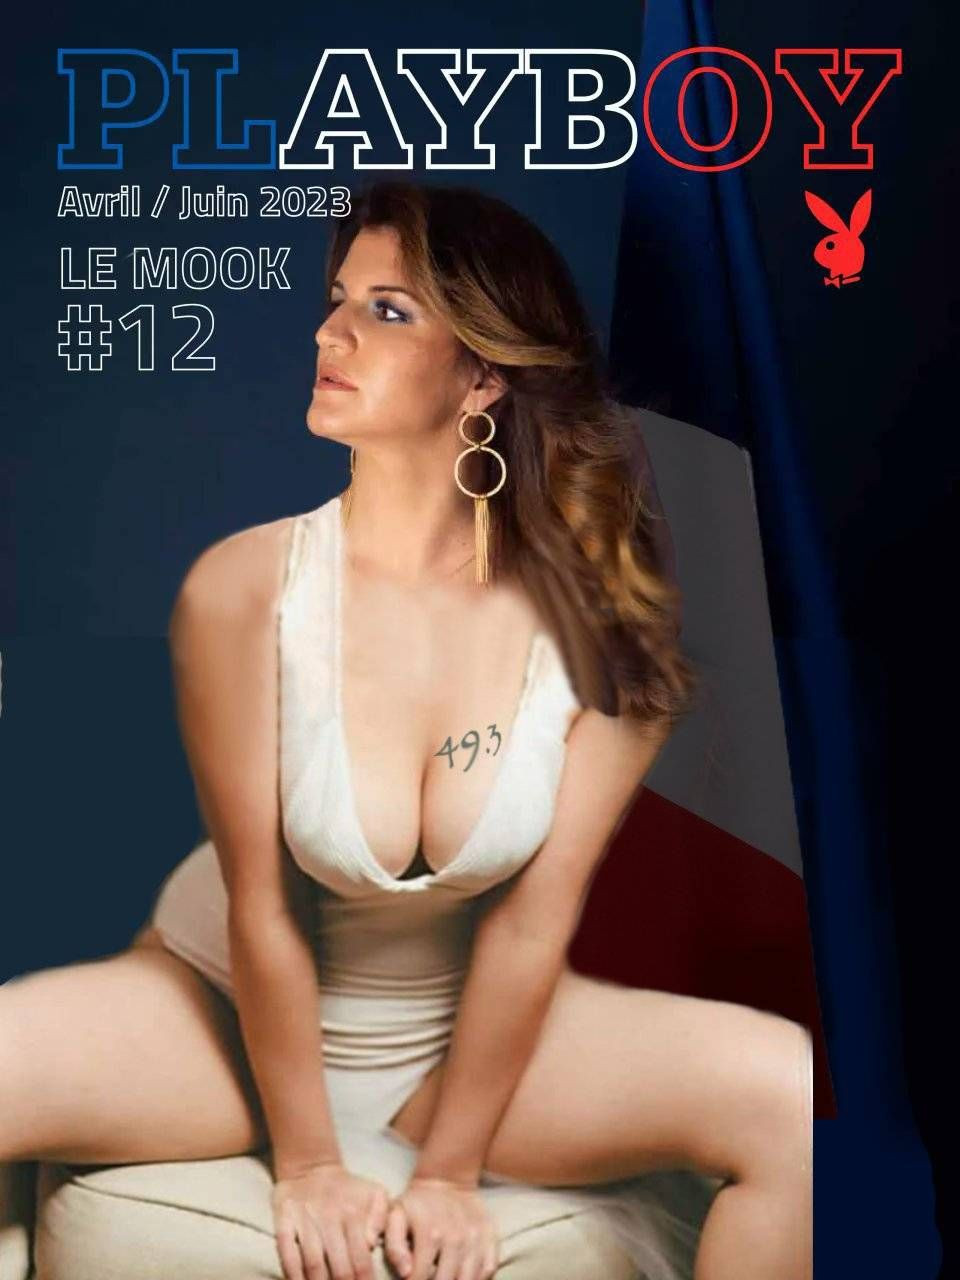 Fransız bakanın Playboy'a verdiği pozlar ülkeyi karıştırdı - Sayfa 3